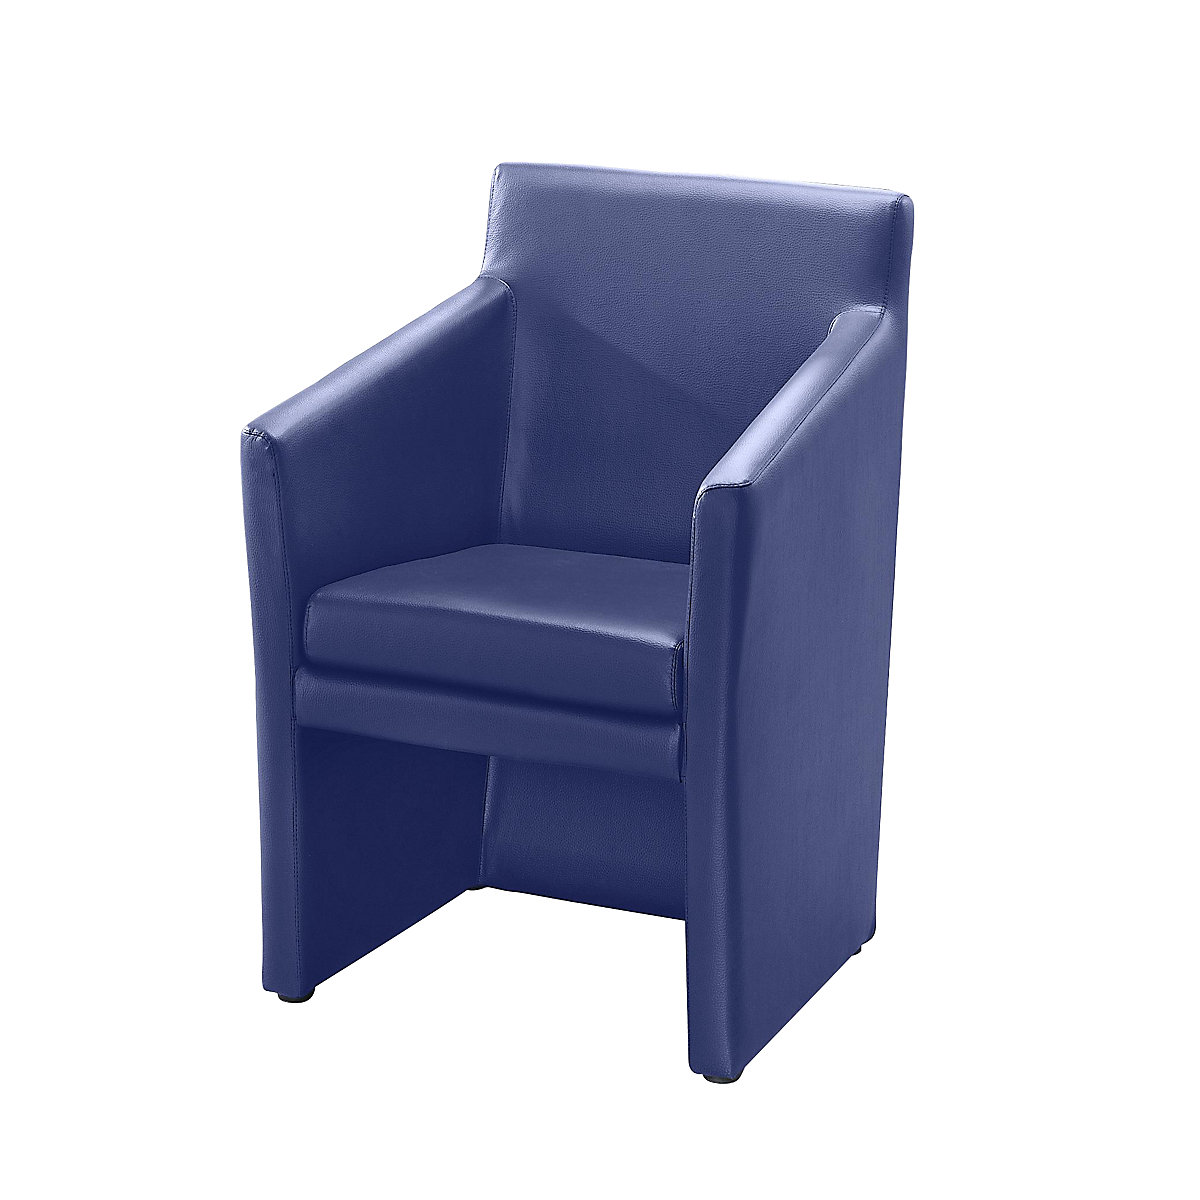 Club armchair, angular